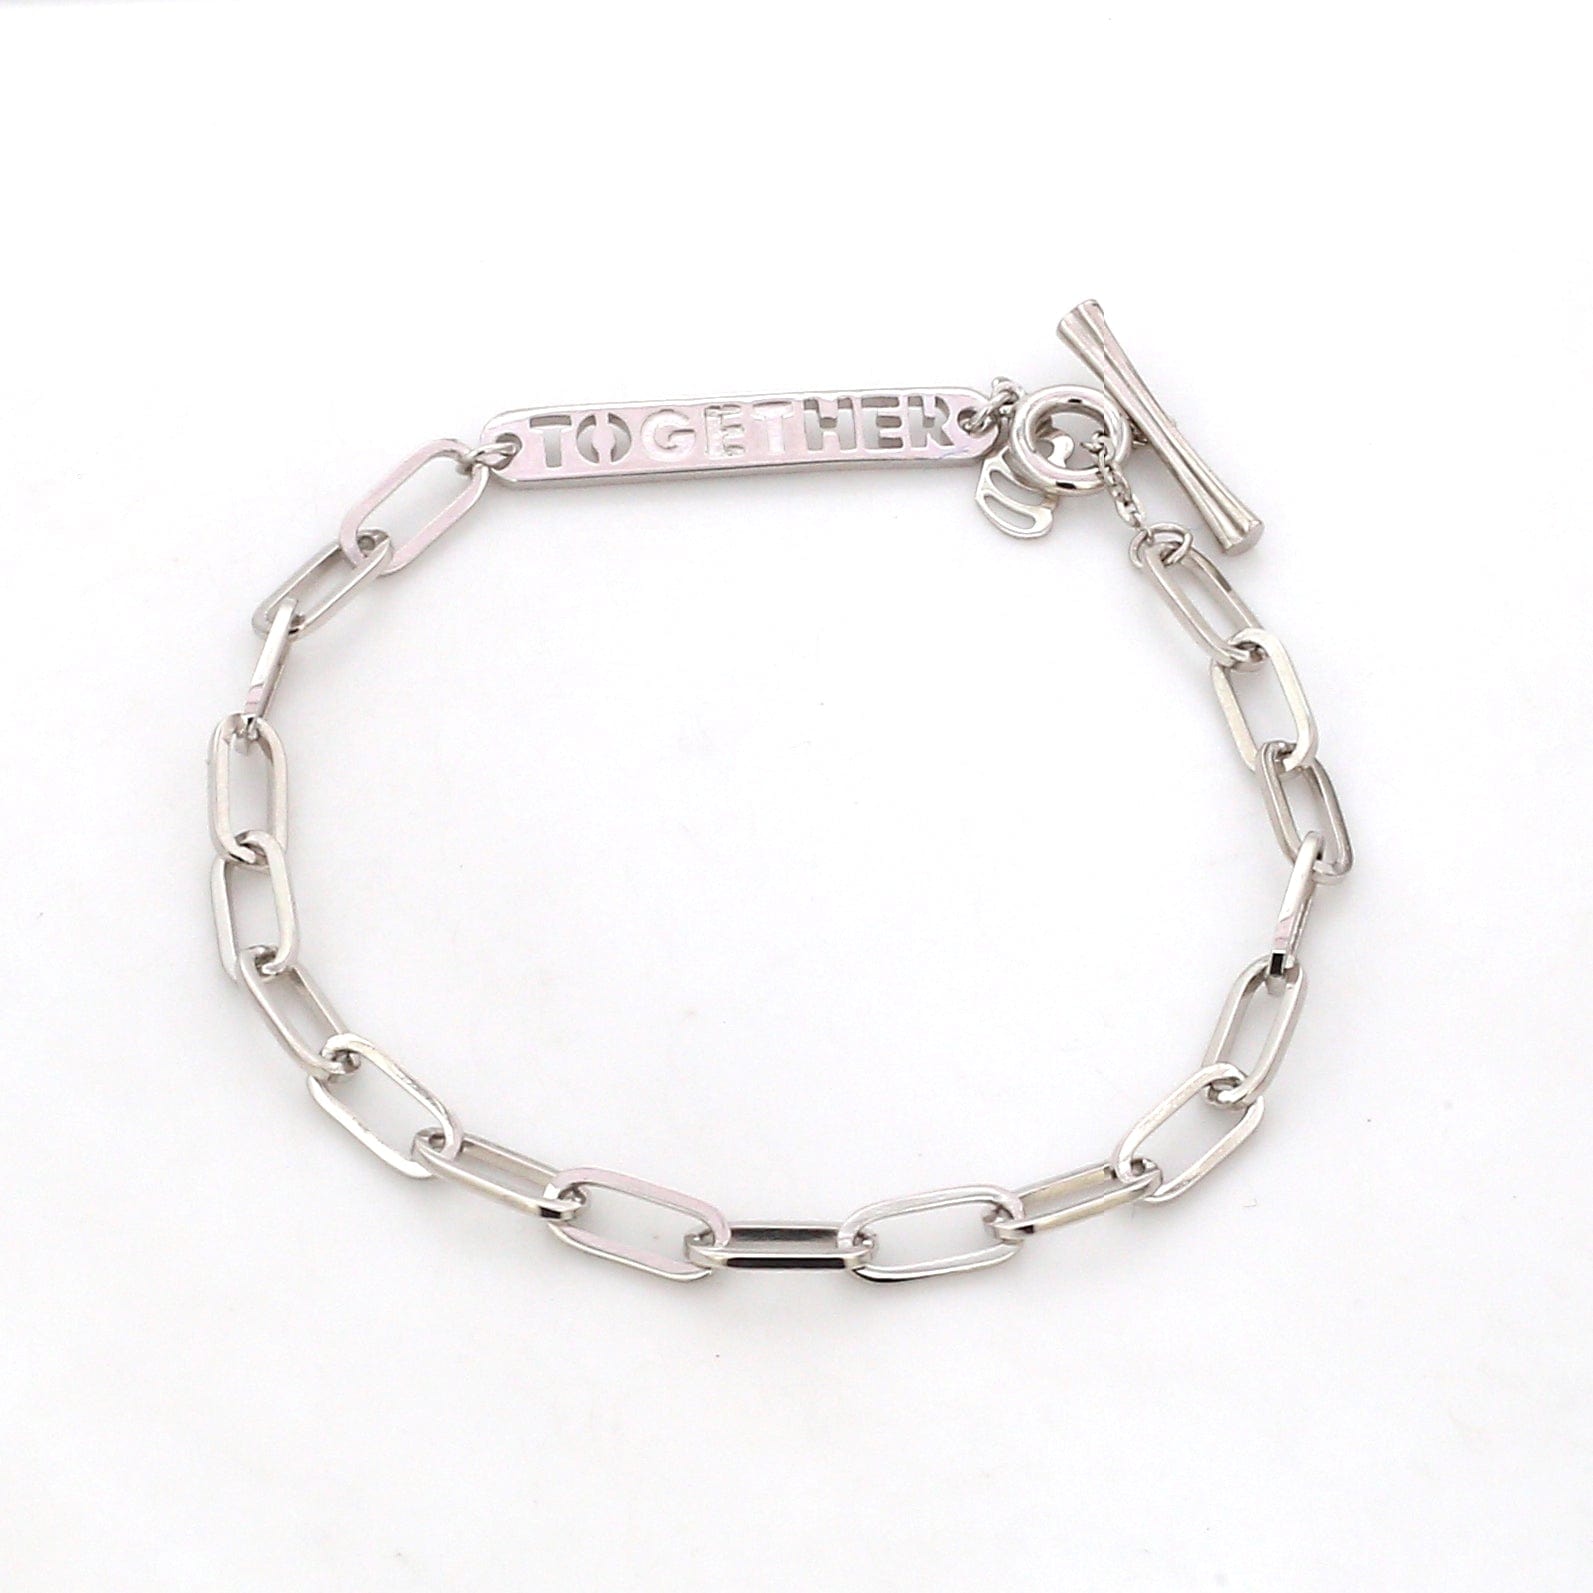 lv chain links bracelet